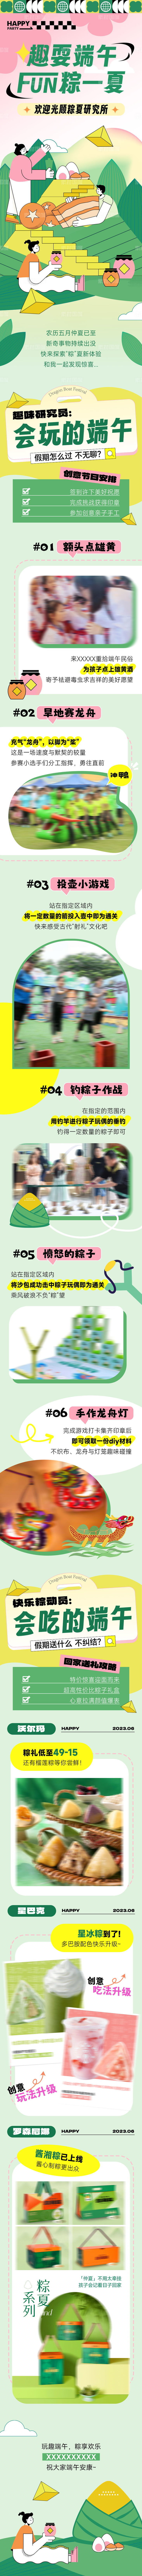 端午节粽子龙舟商场活动插画微信公众号推文长图